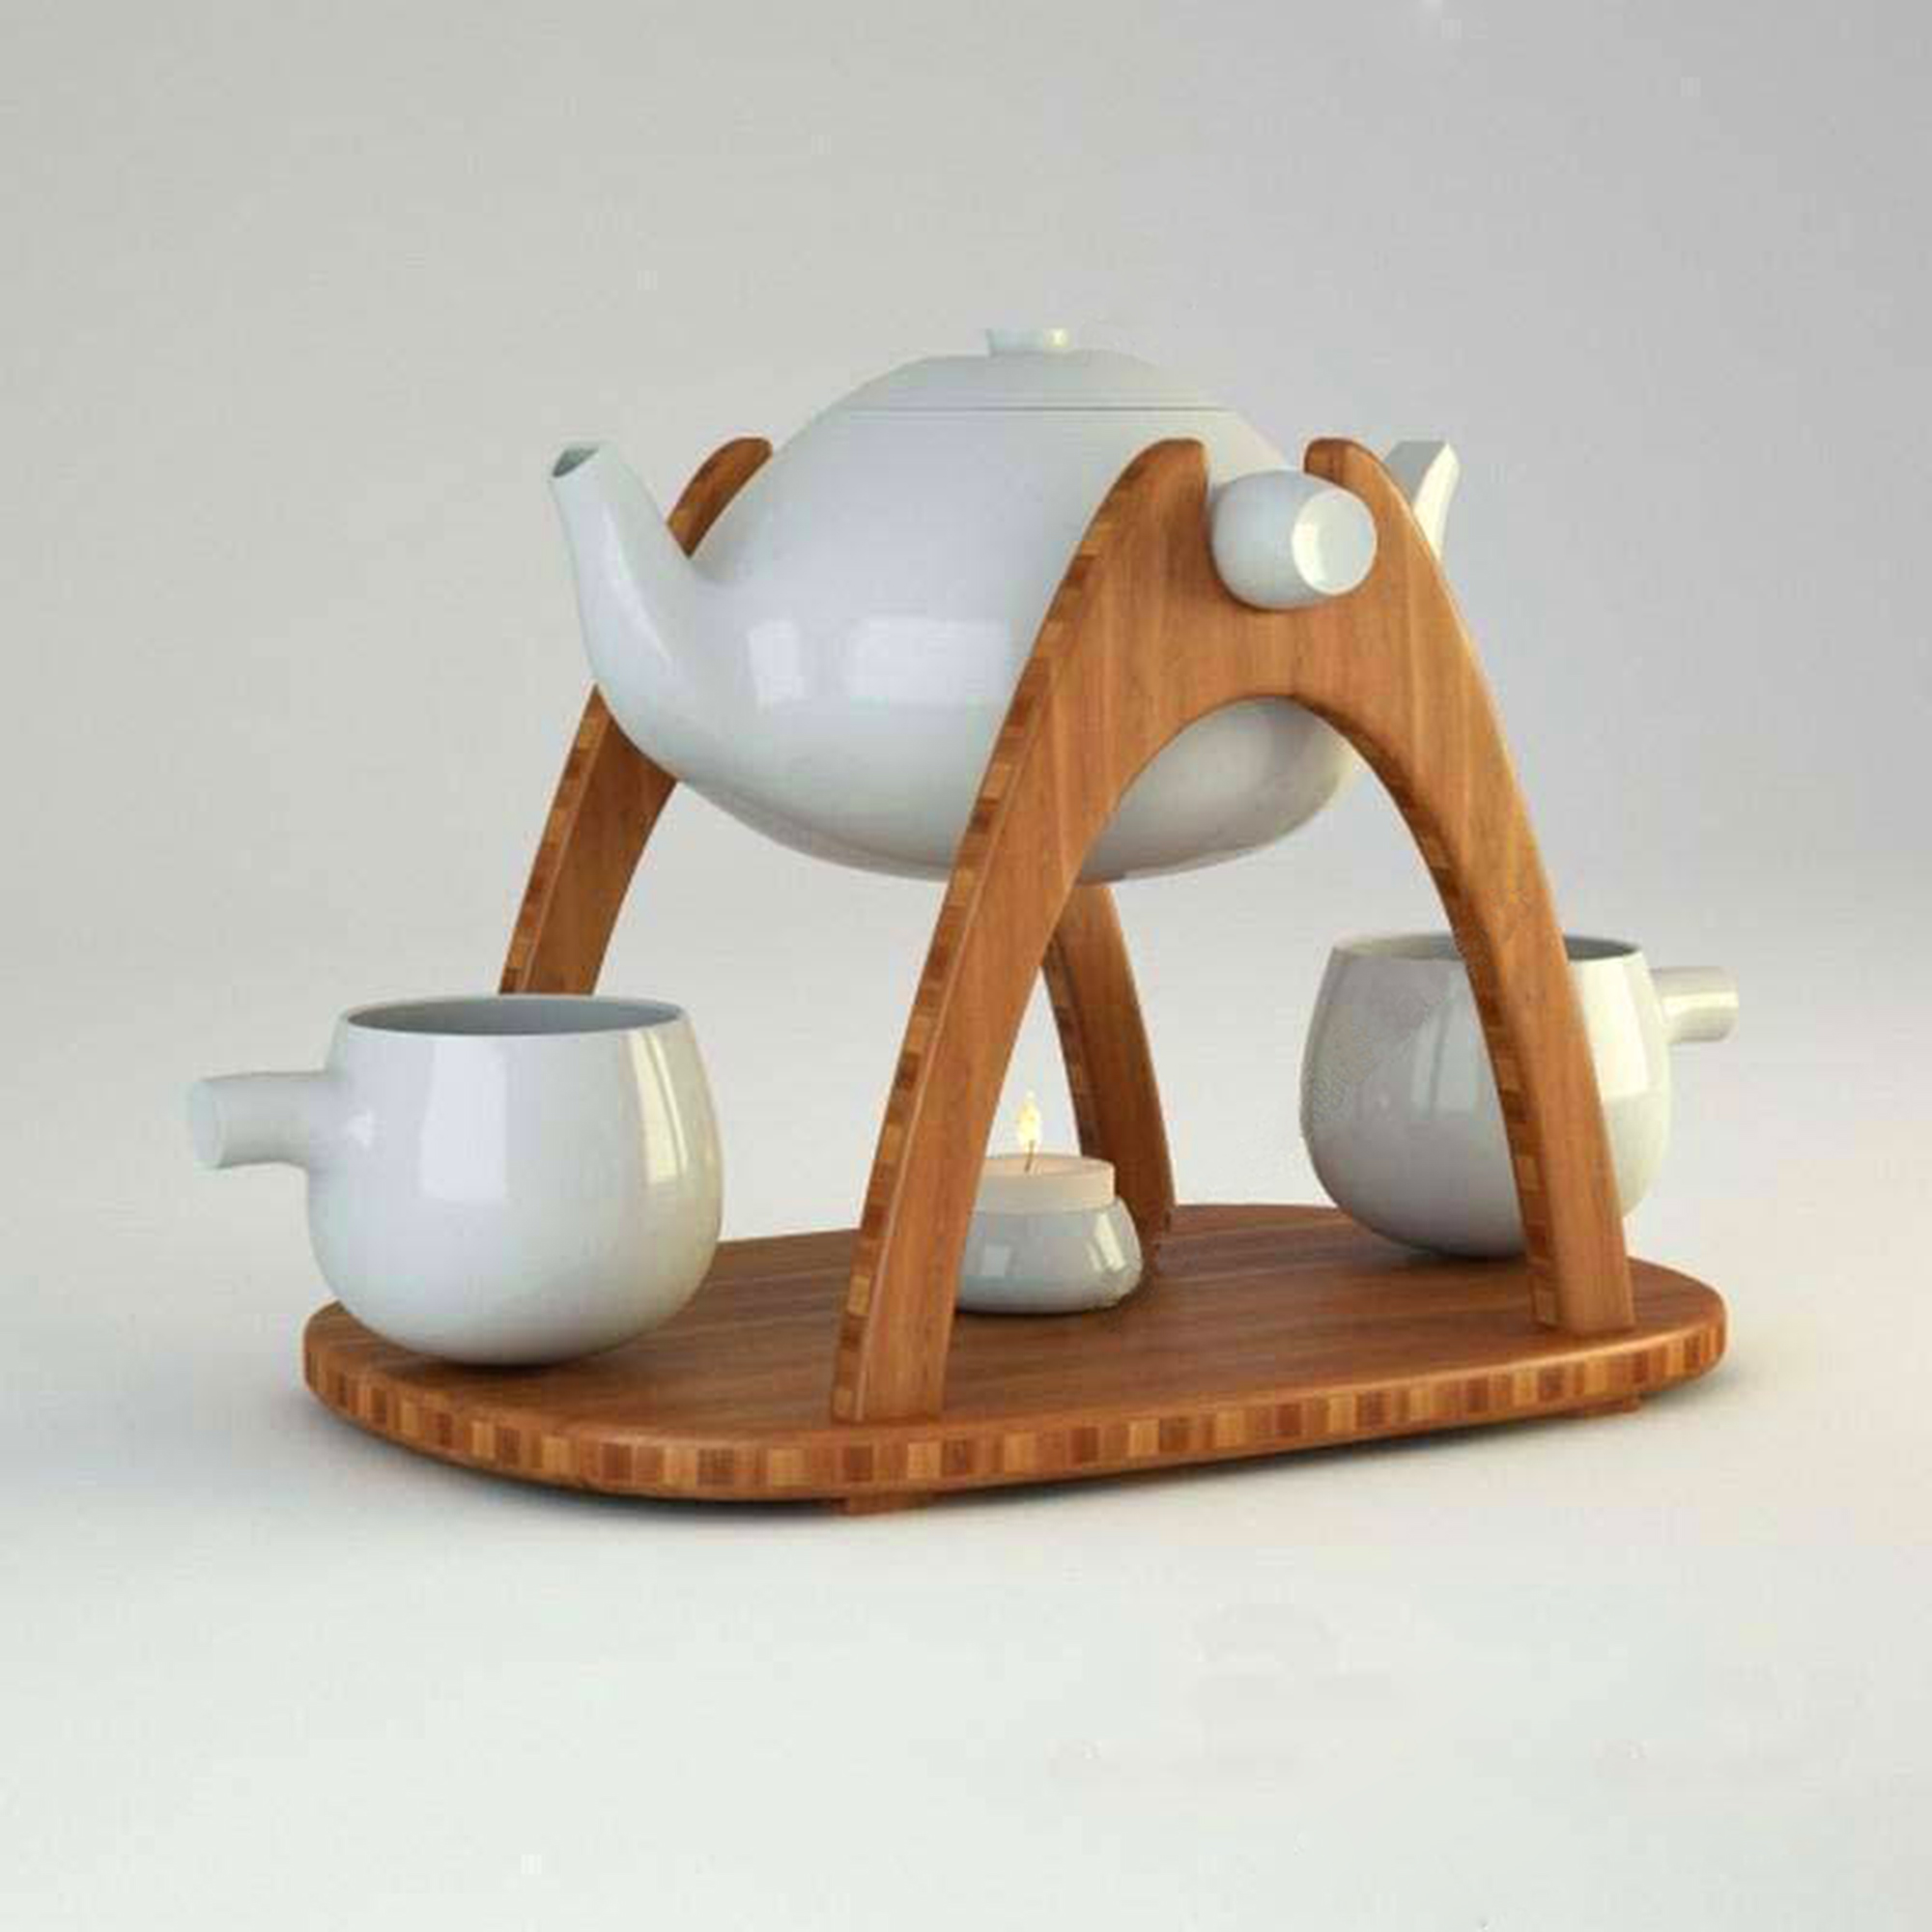 茶具, 茶壶, 茶杯